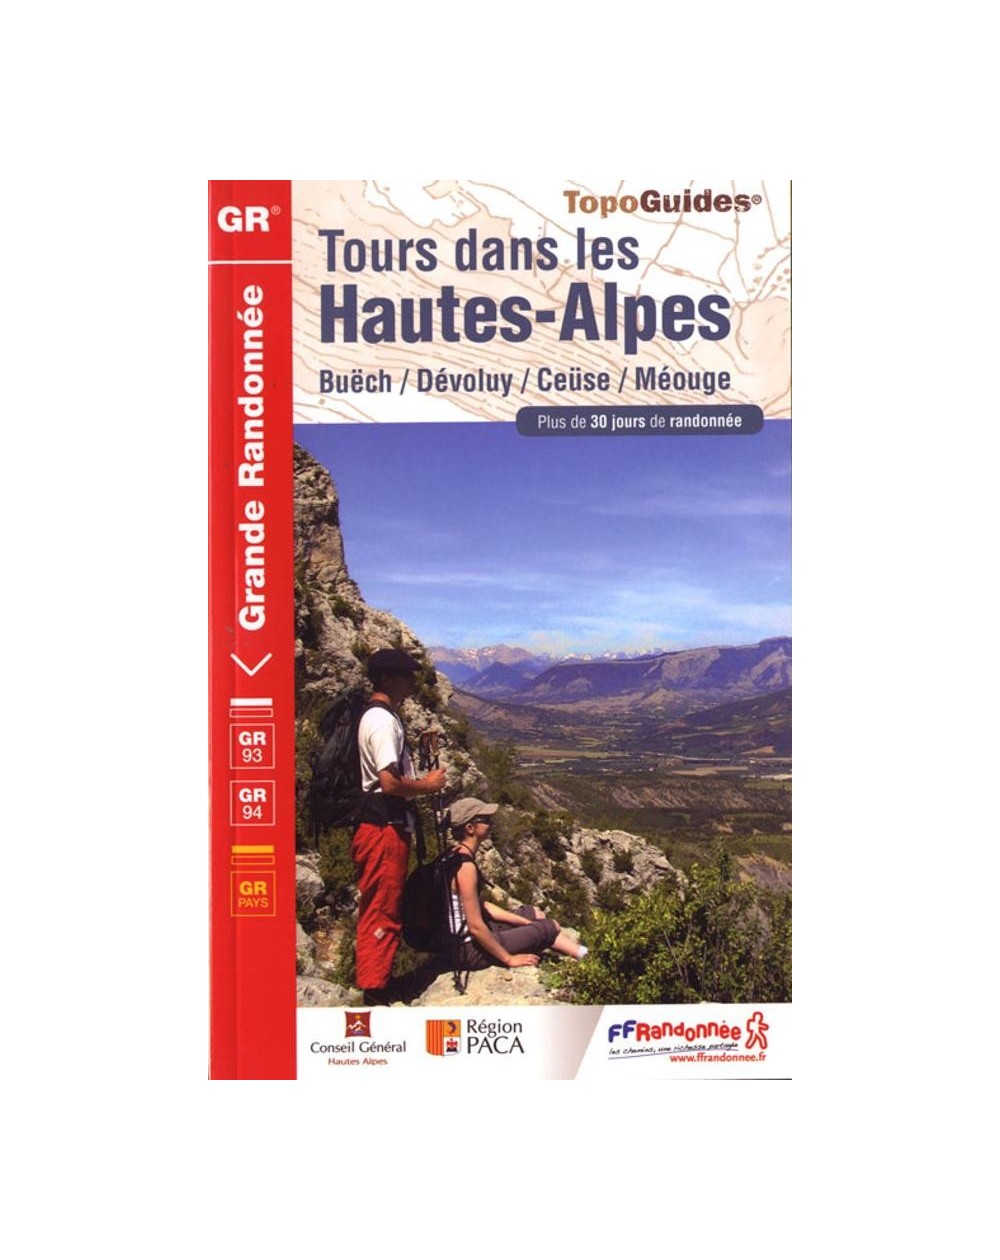 GR94 - Tours dans les Hautes-Alpes | Topoguide FFRP